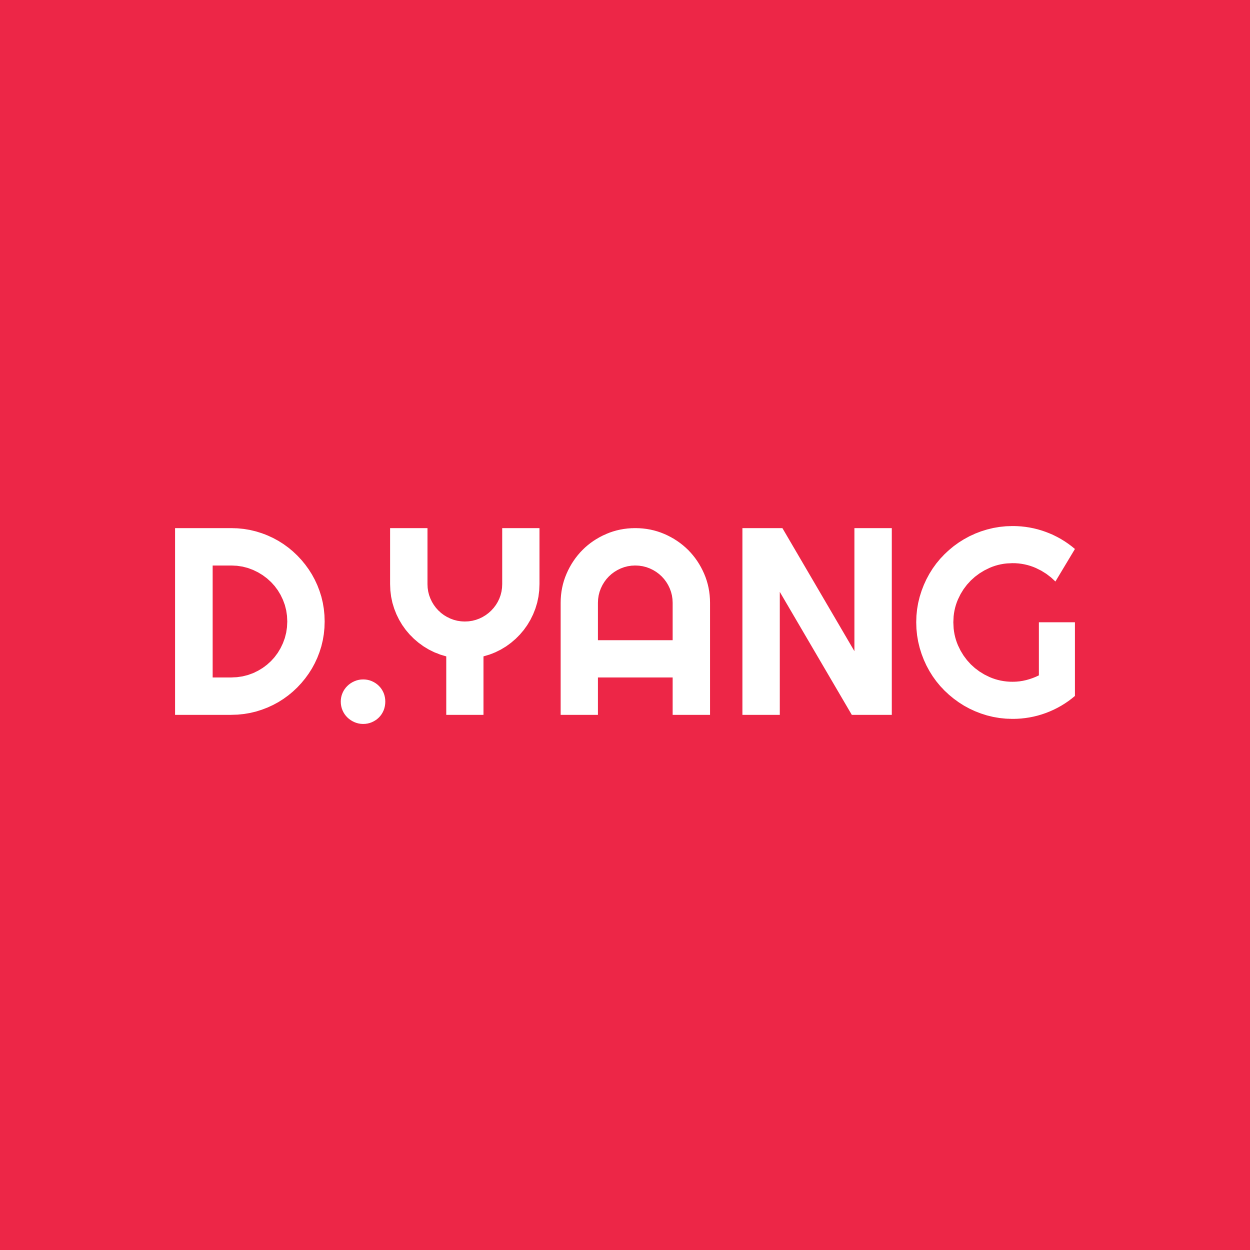 D.Yang logo